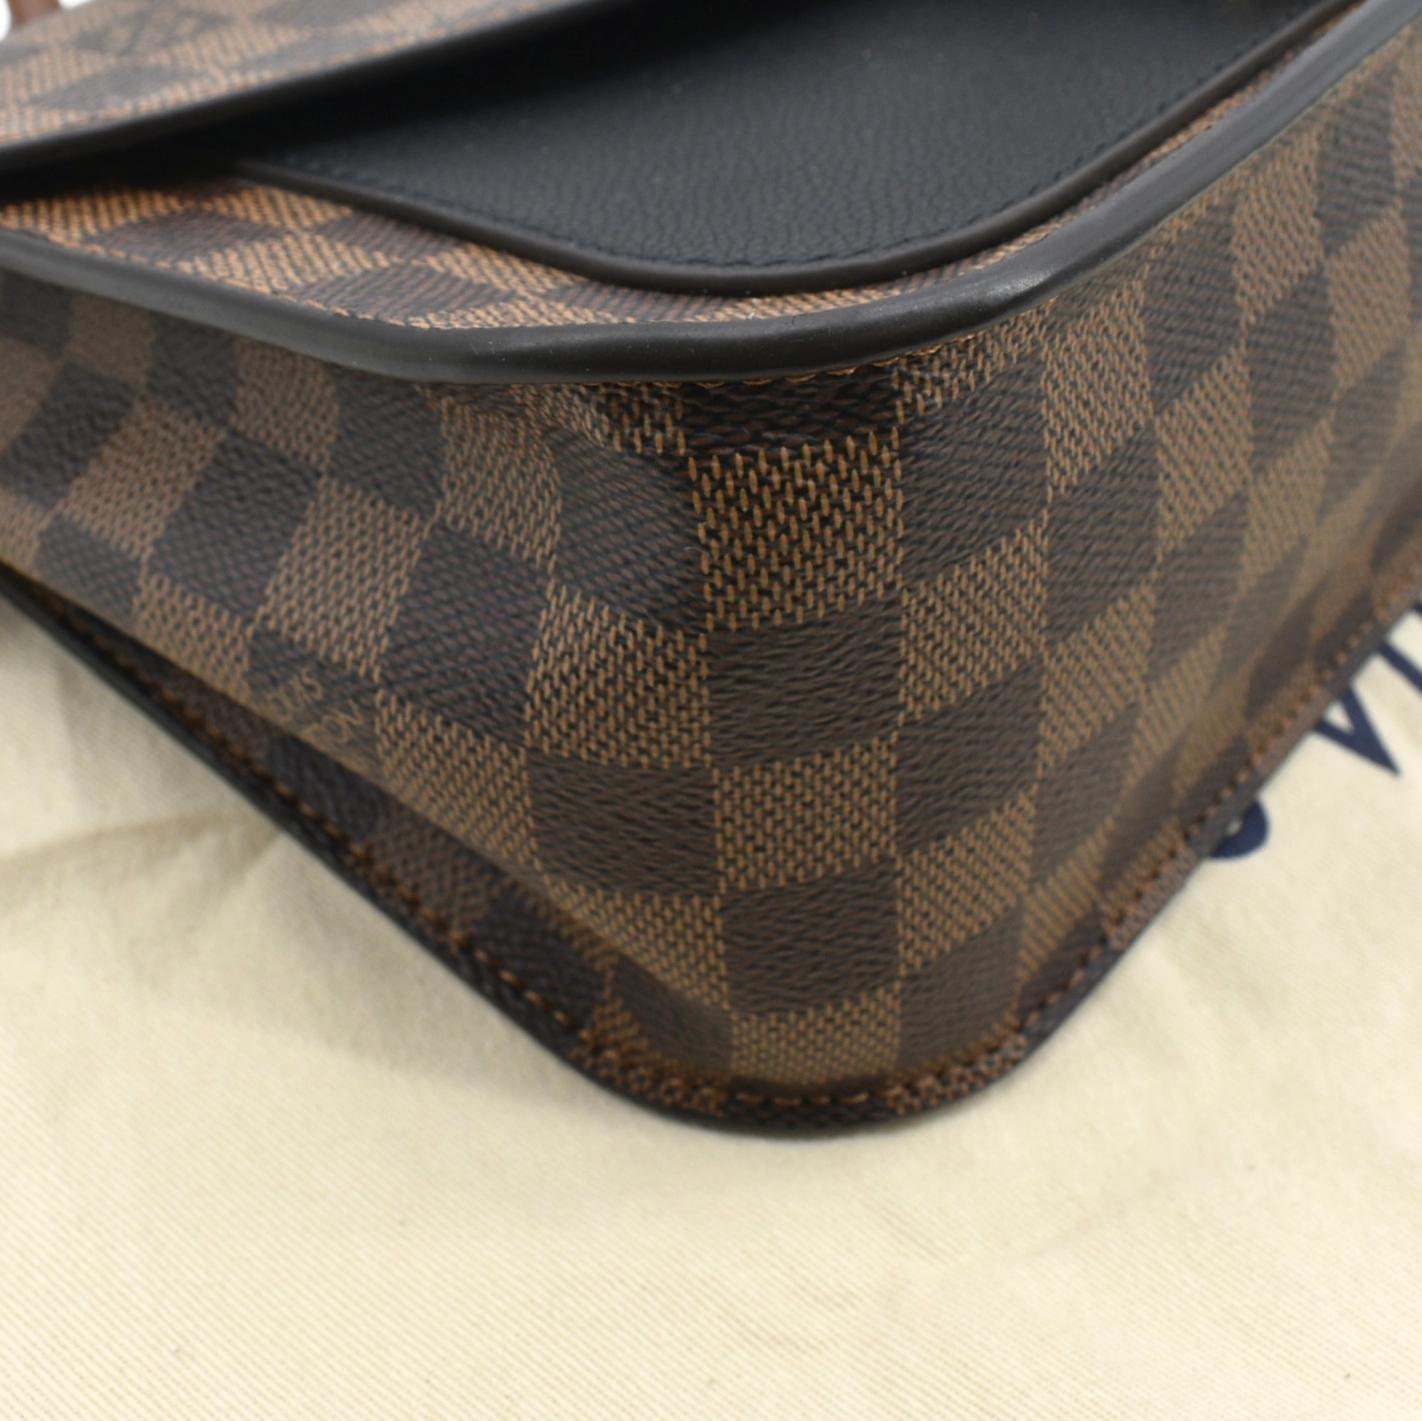 Louis Vuitton Beaumarchais Damier Ebene Shoulder Bag